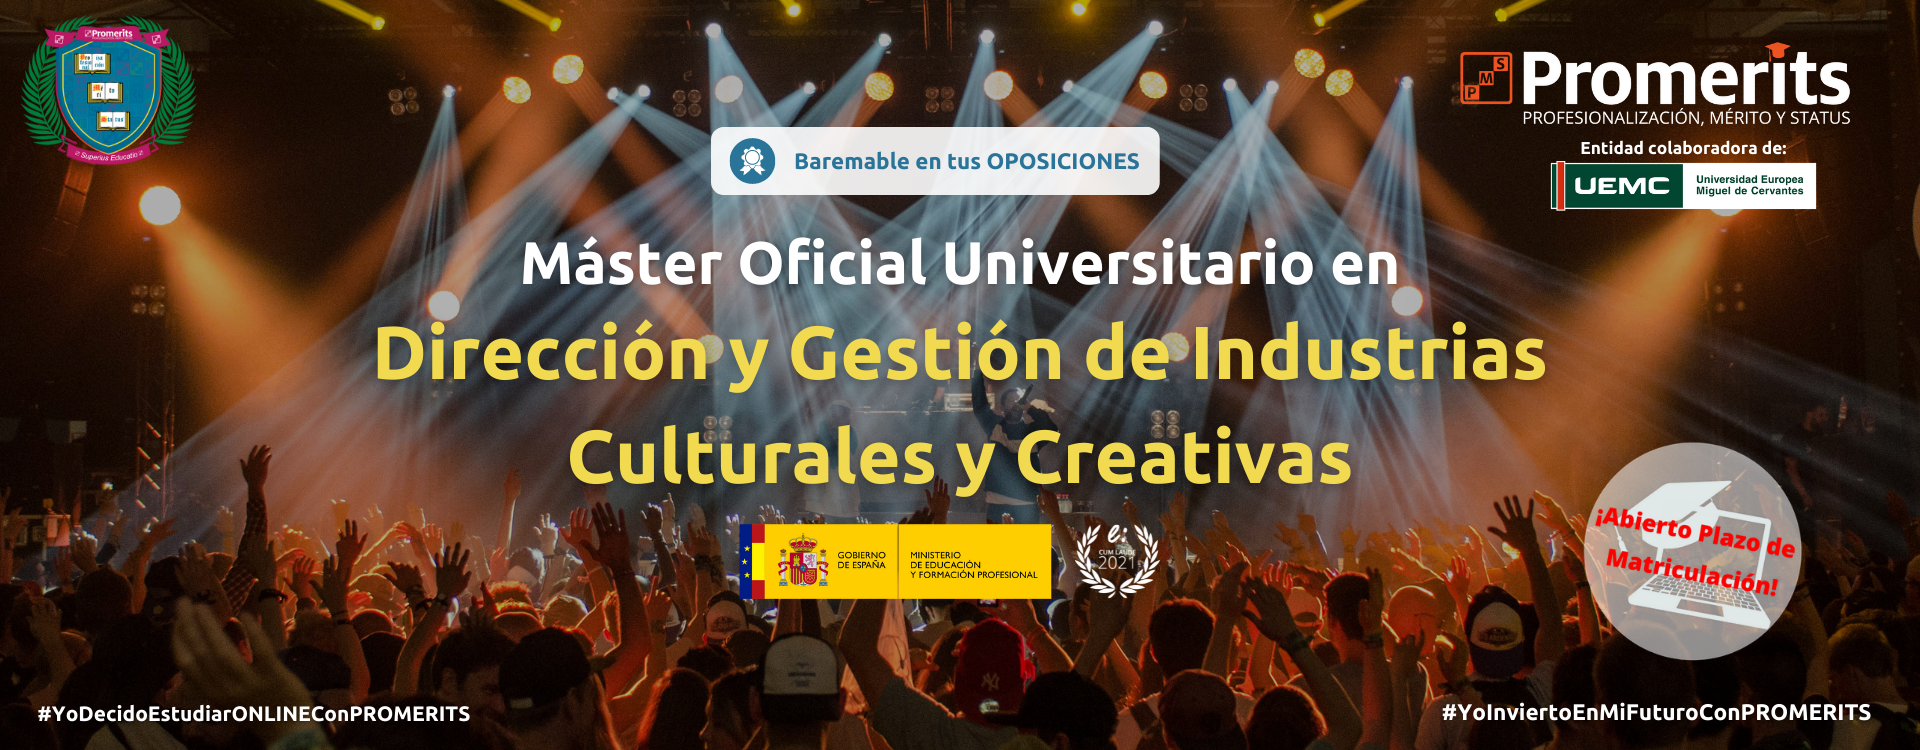 Máster Oficial Universitario en Dirección y Gestión de Industrias Culturales y Creativas